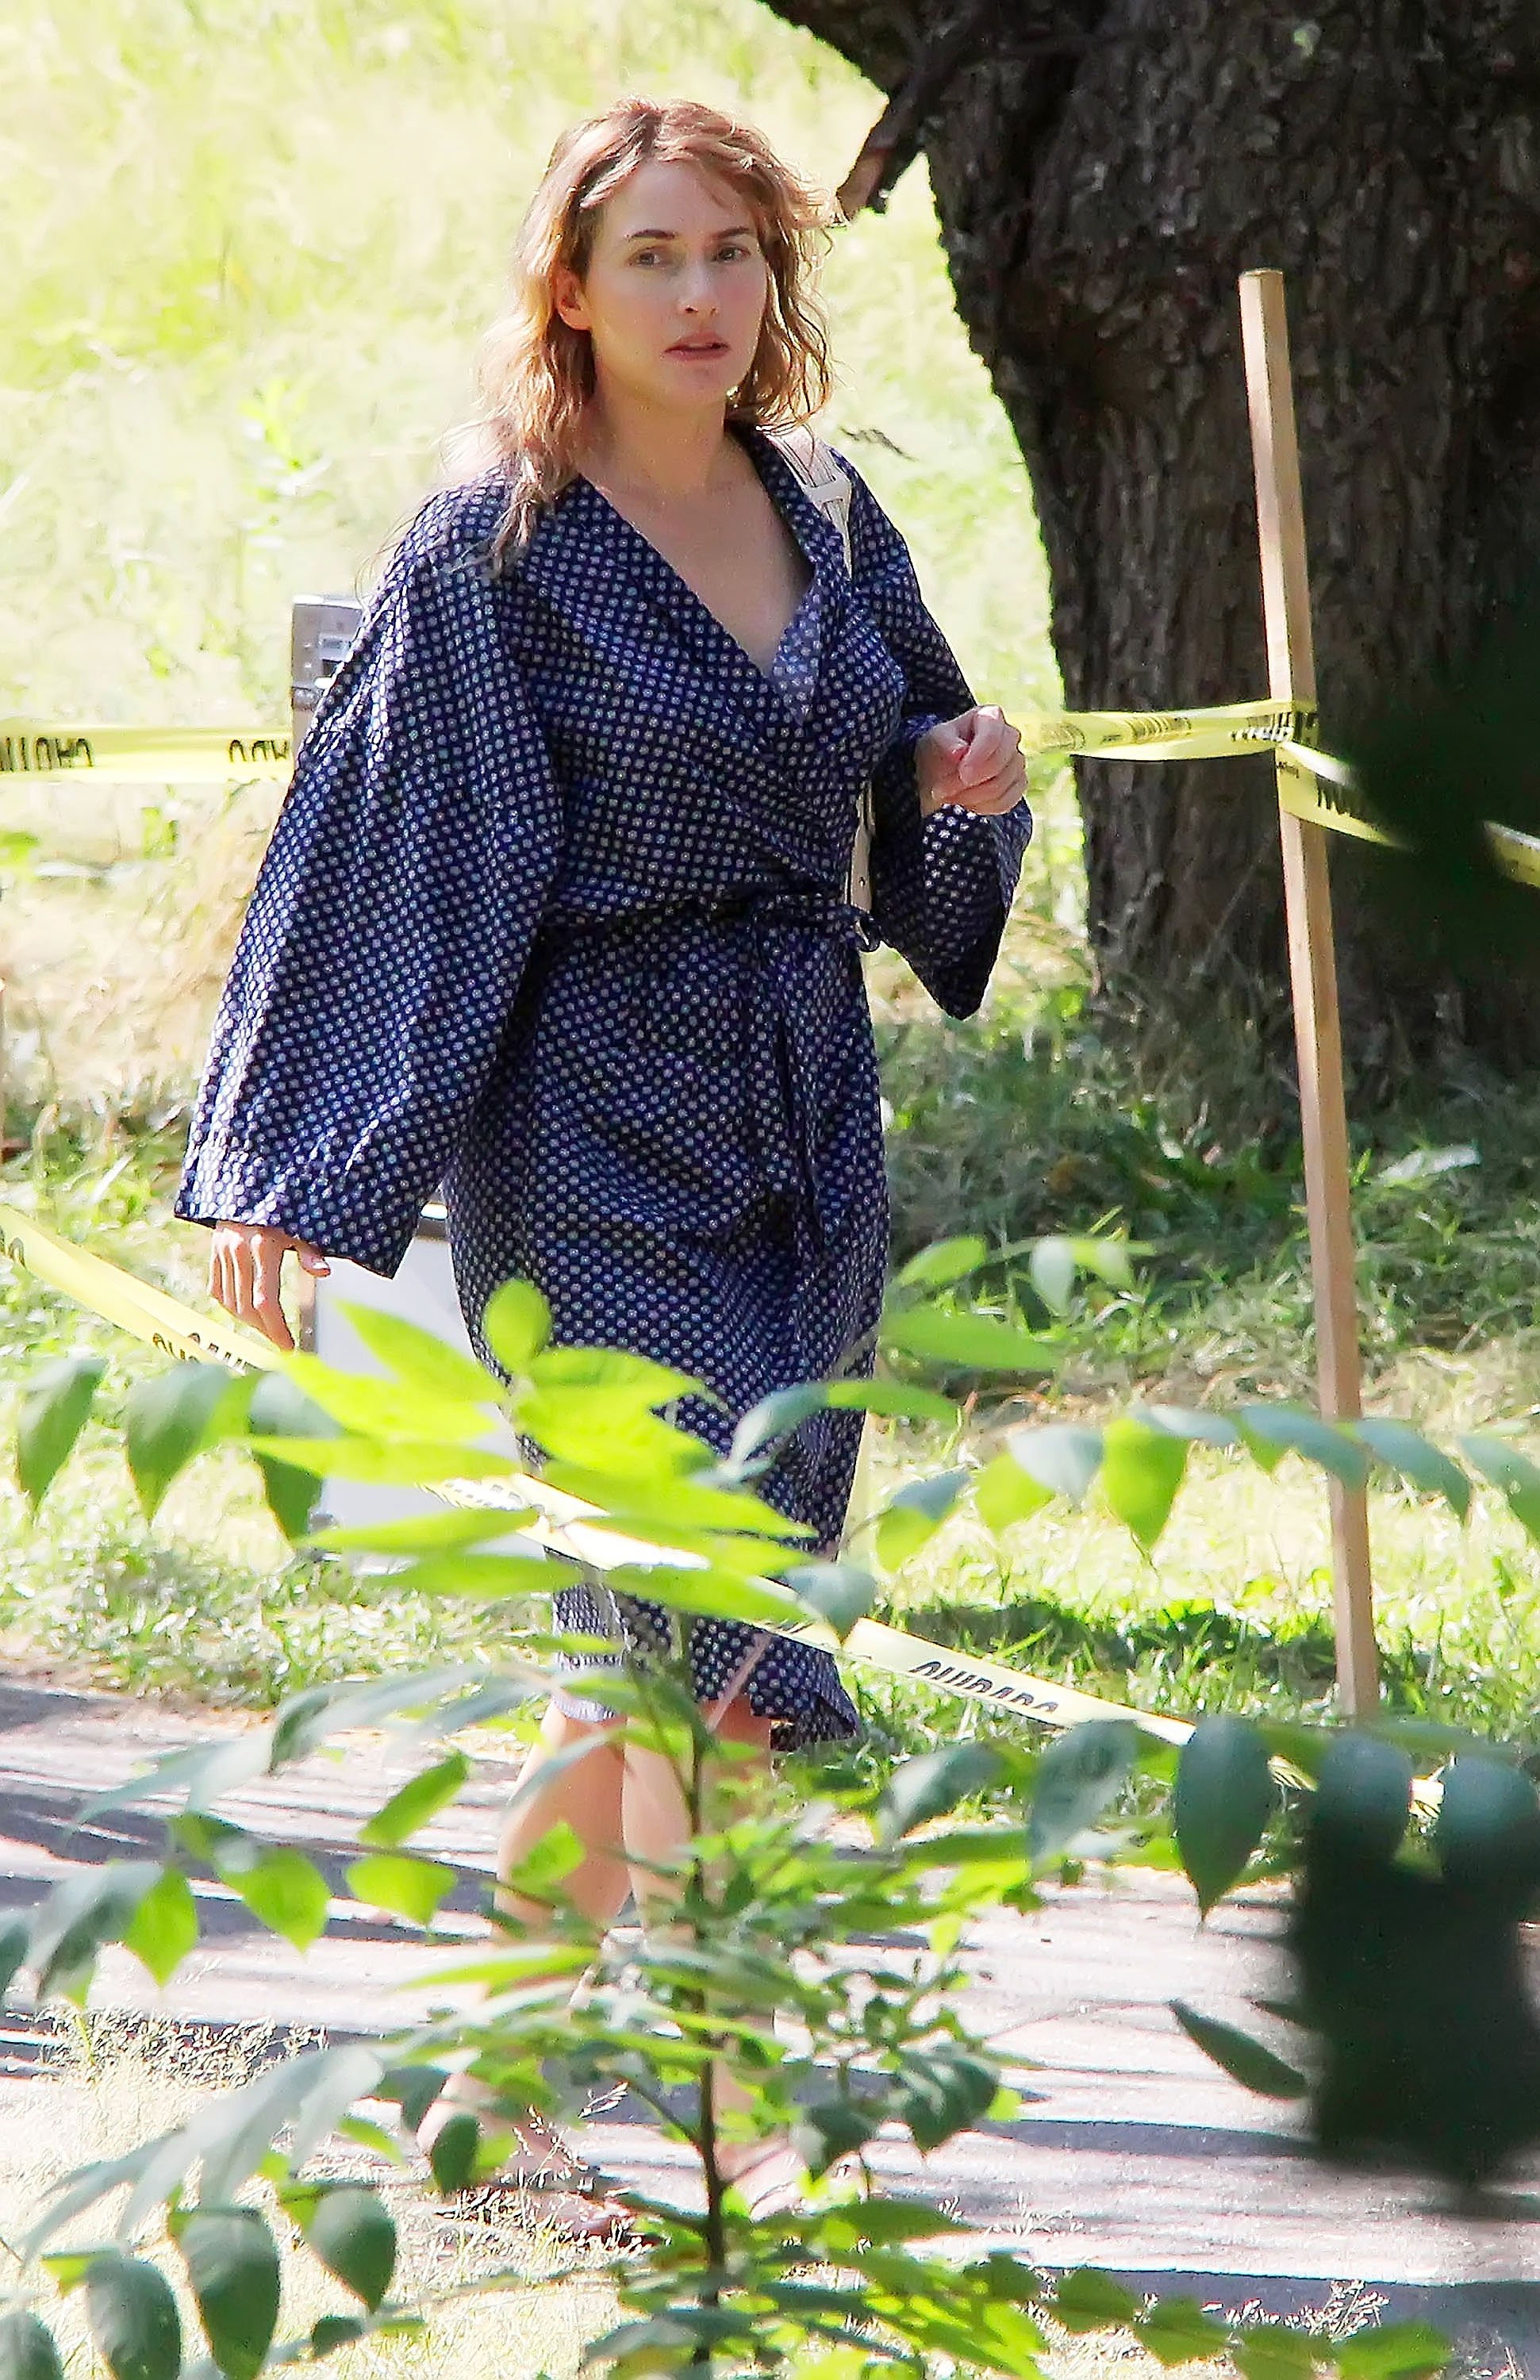 Kate Winslet am Set von "Labor Day" am 12. Juli 2012 in Boston, Massachusetts ┃Quelle: Getty Images